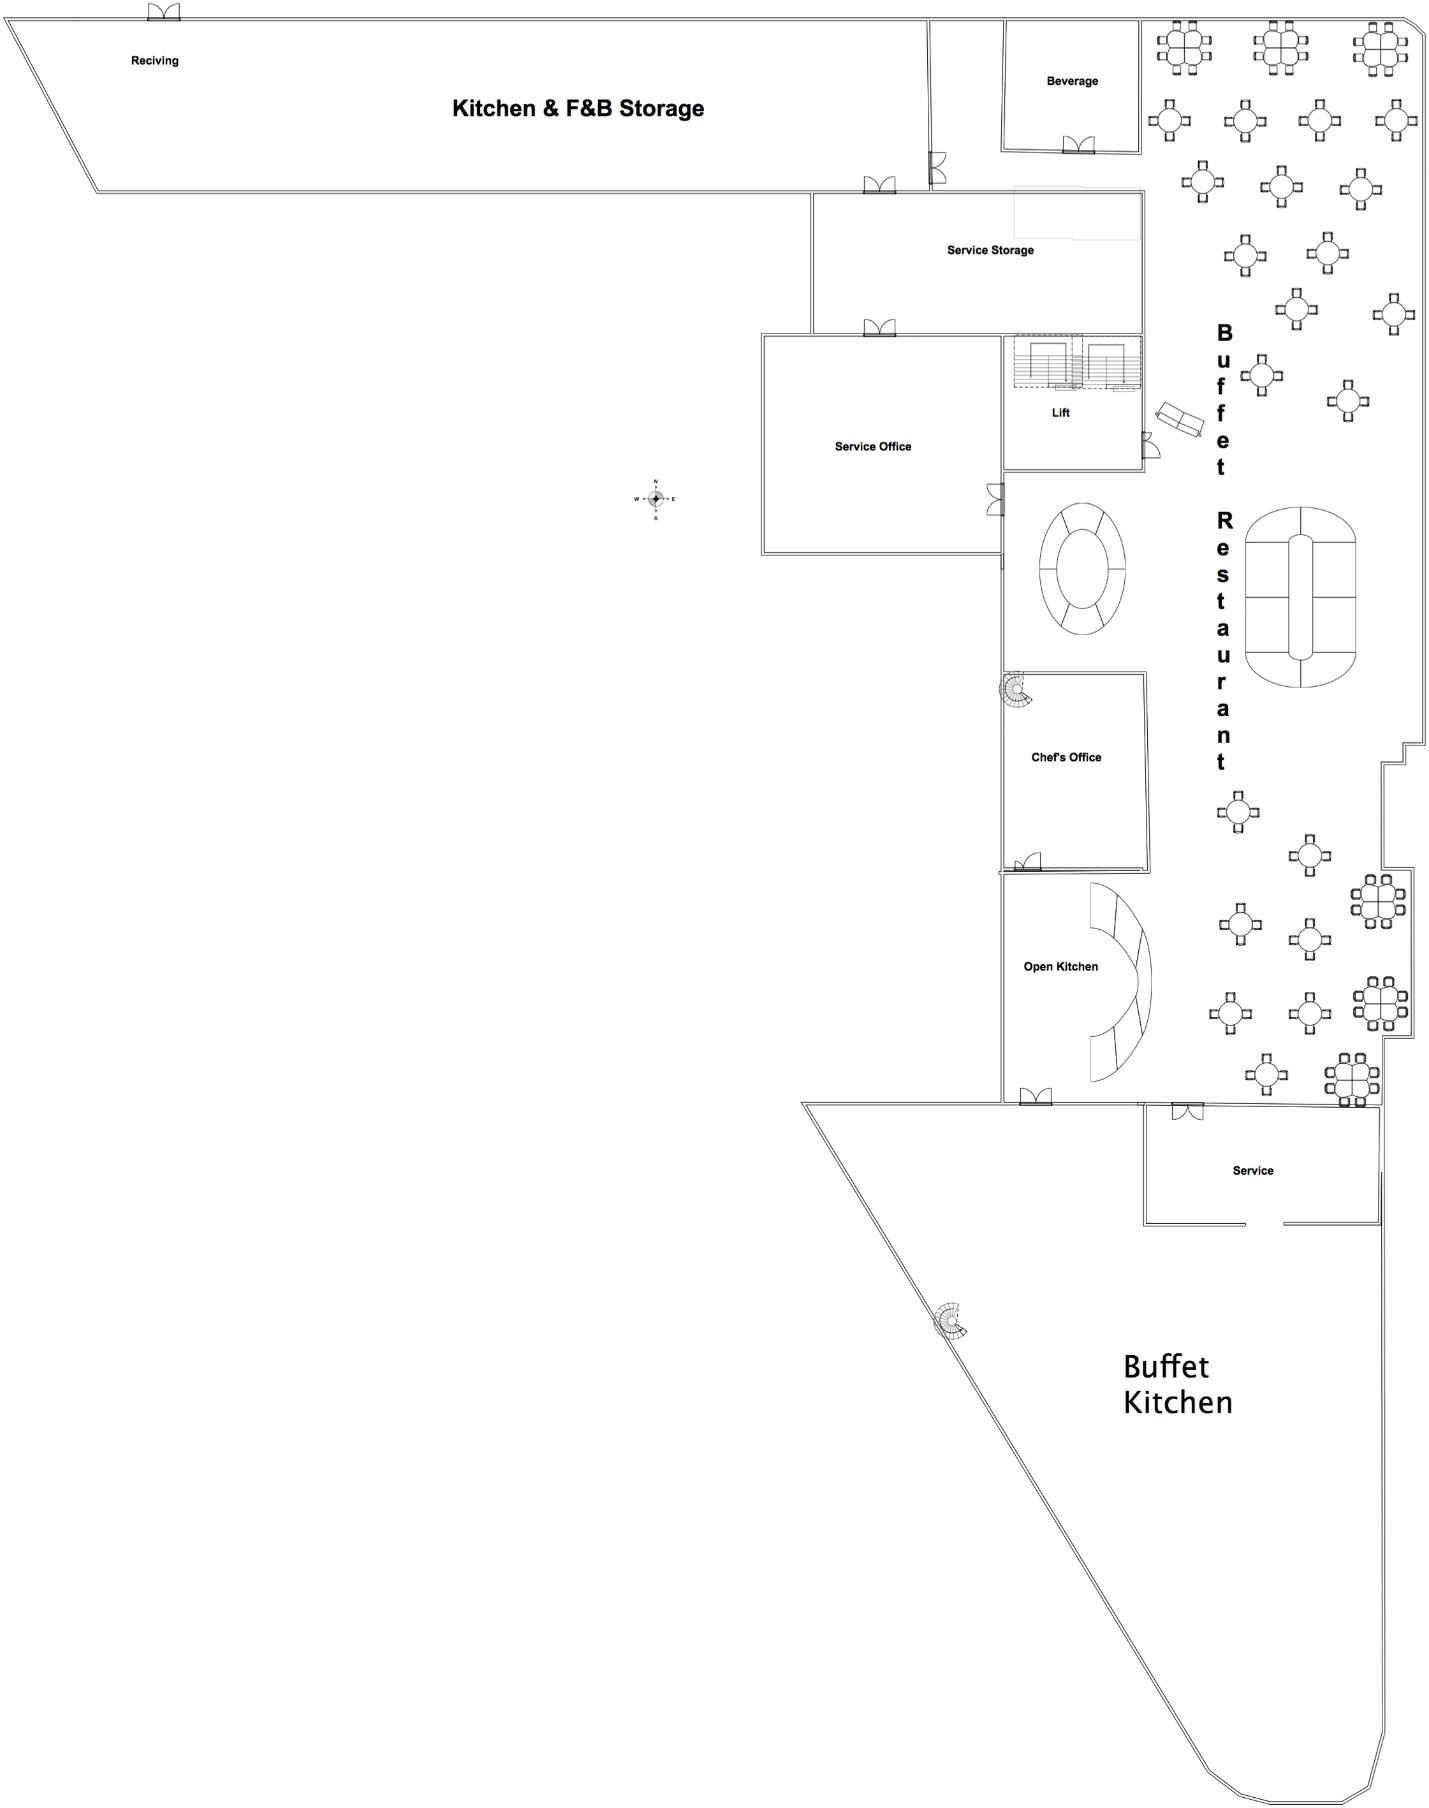 1st floor layout